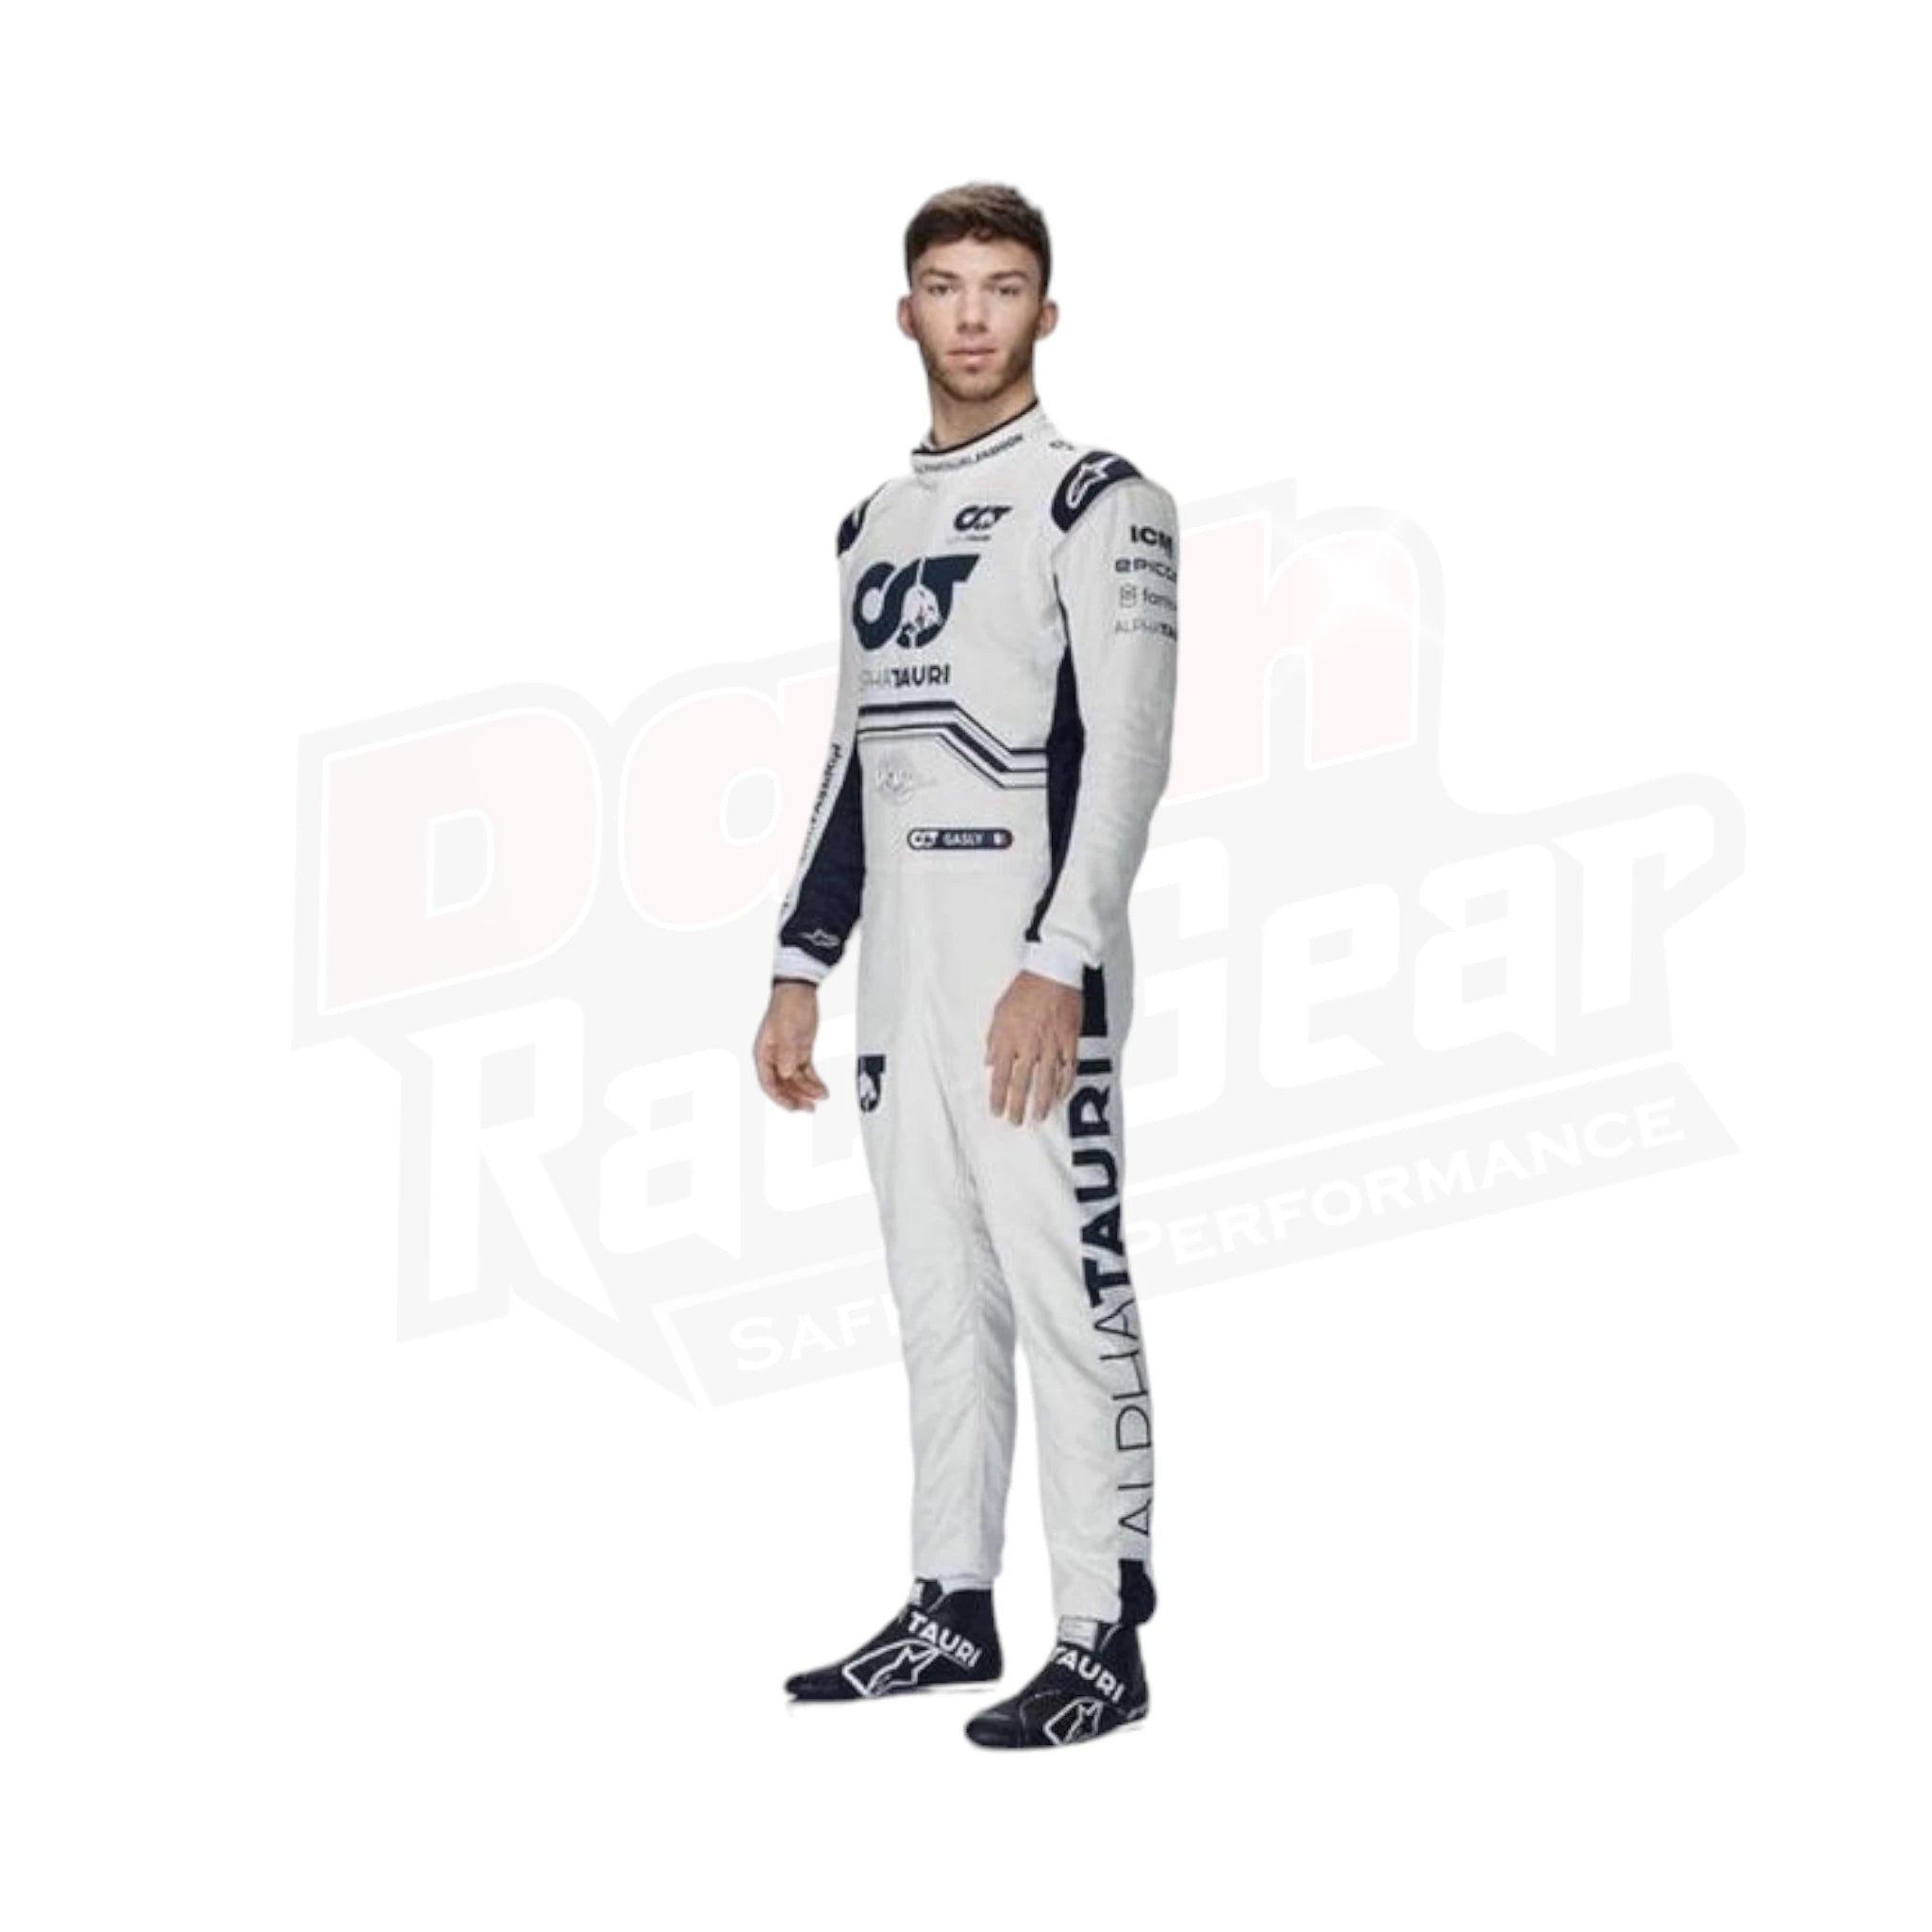 2022 Pierre Gasly Scuderia AlphaTauri F1 Race Suit